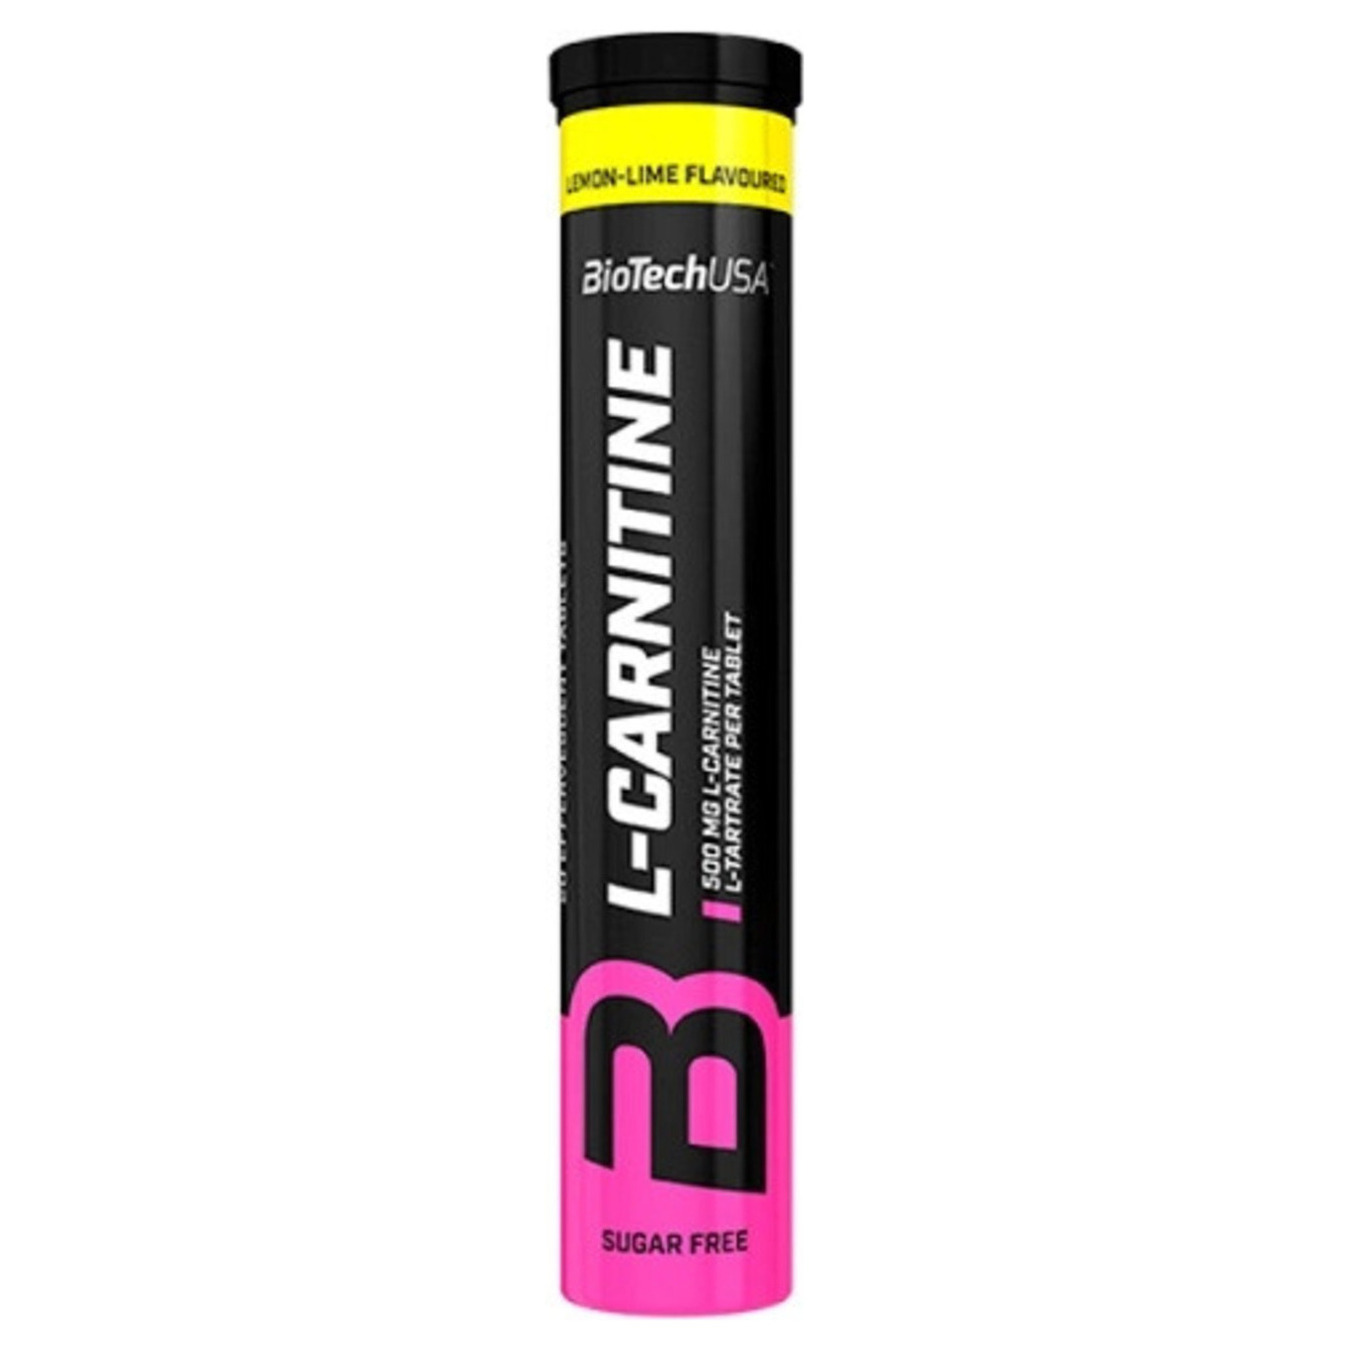 Carnitine Biotech l-carnitine lemon-lime 20pcs